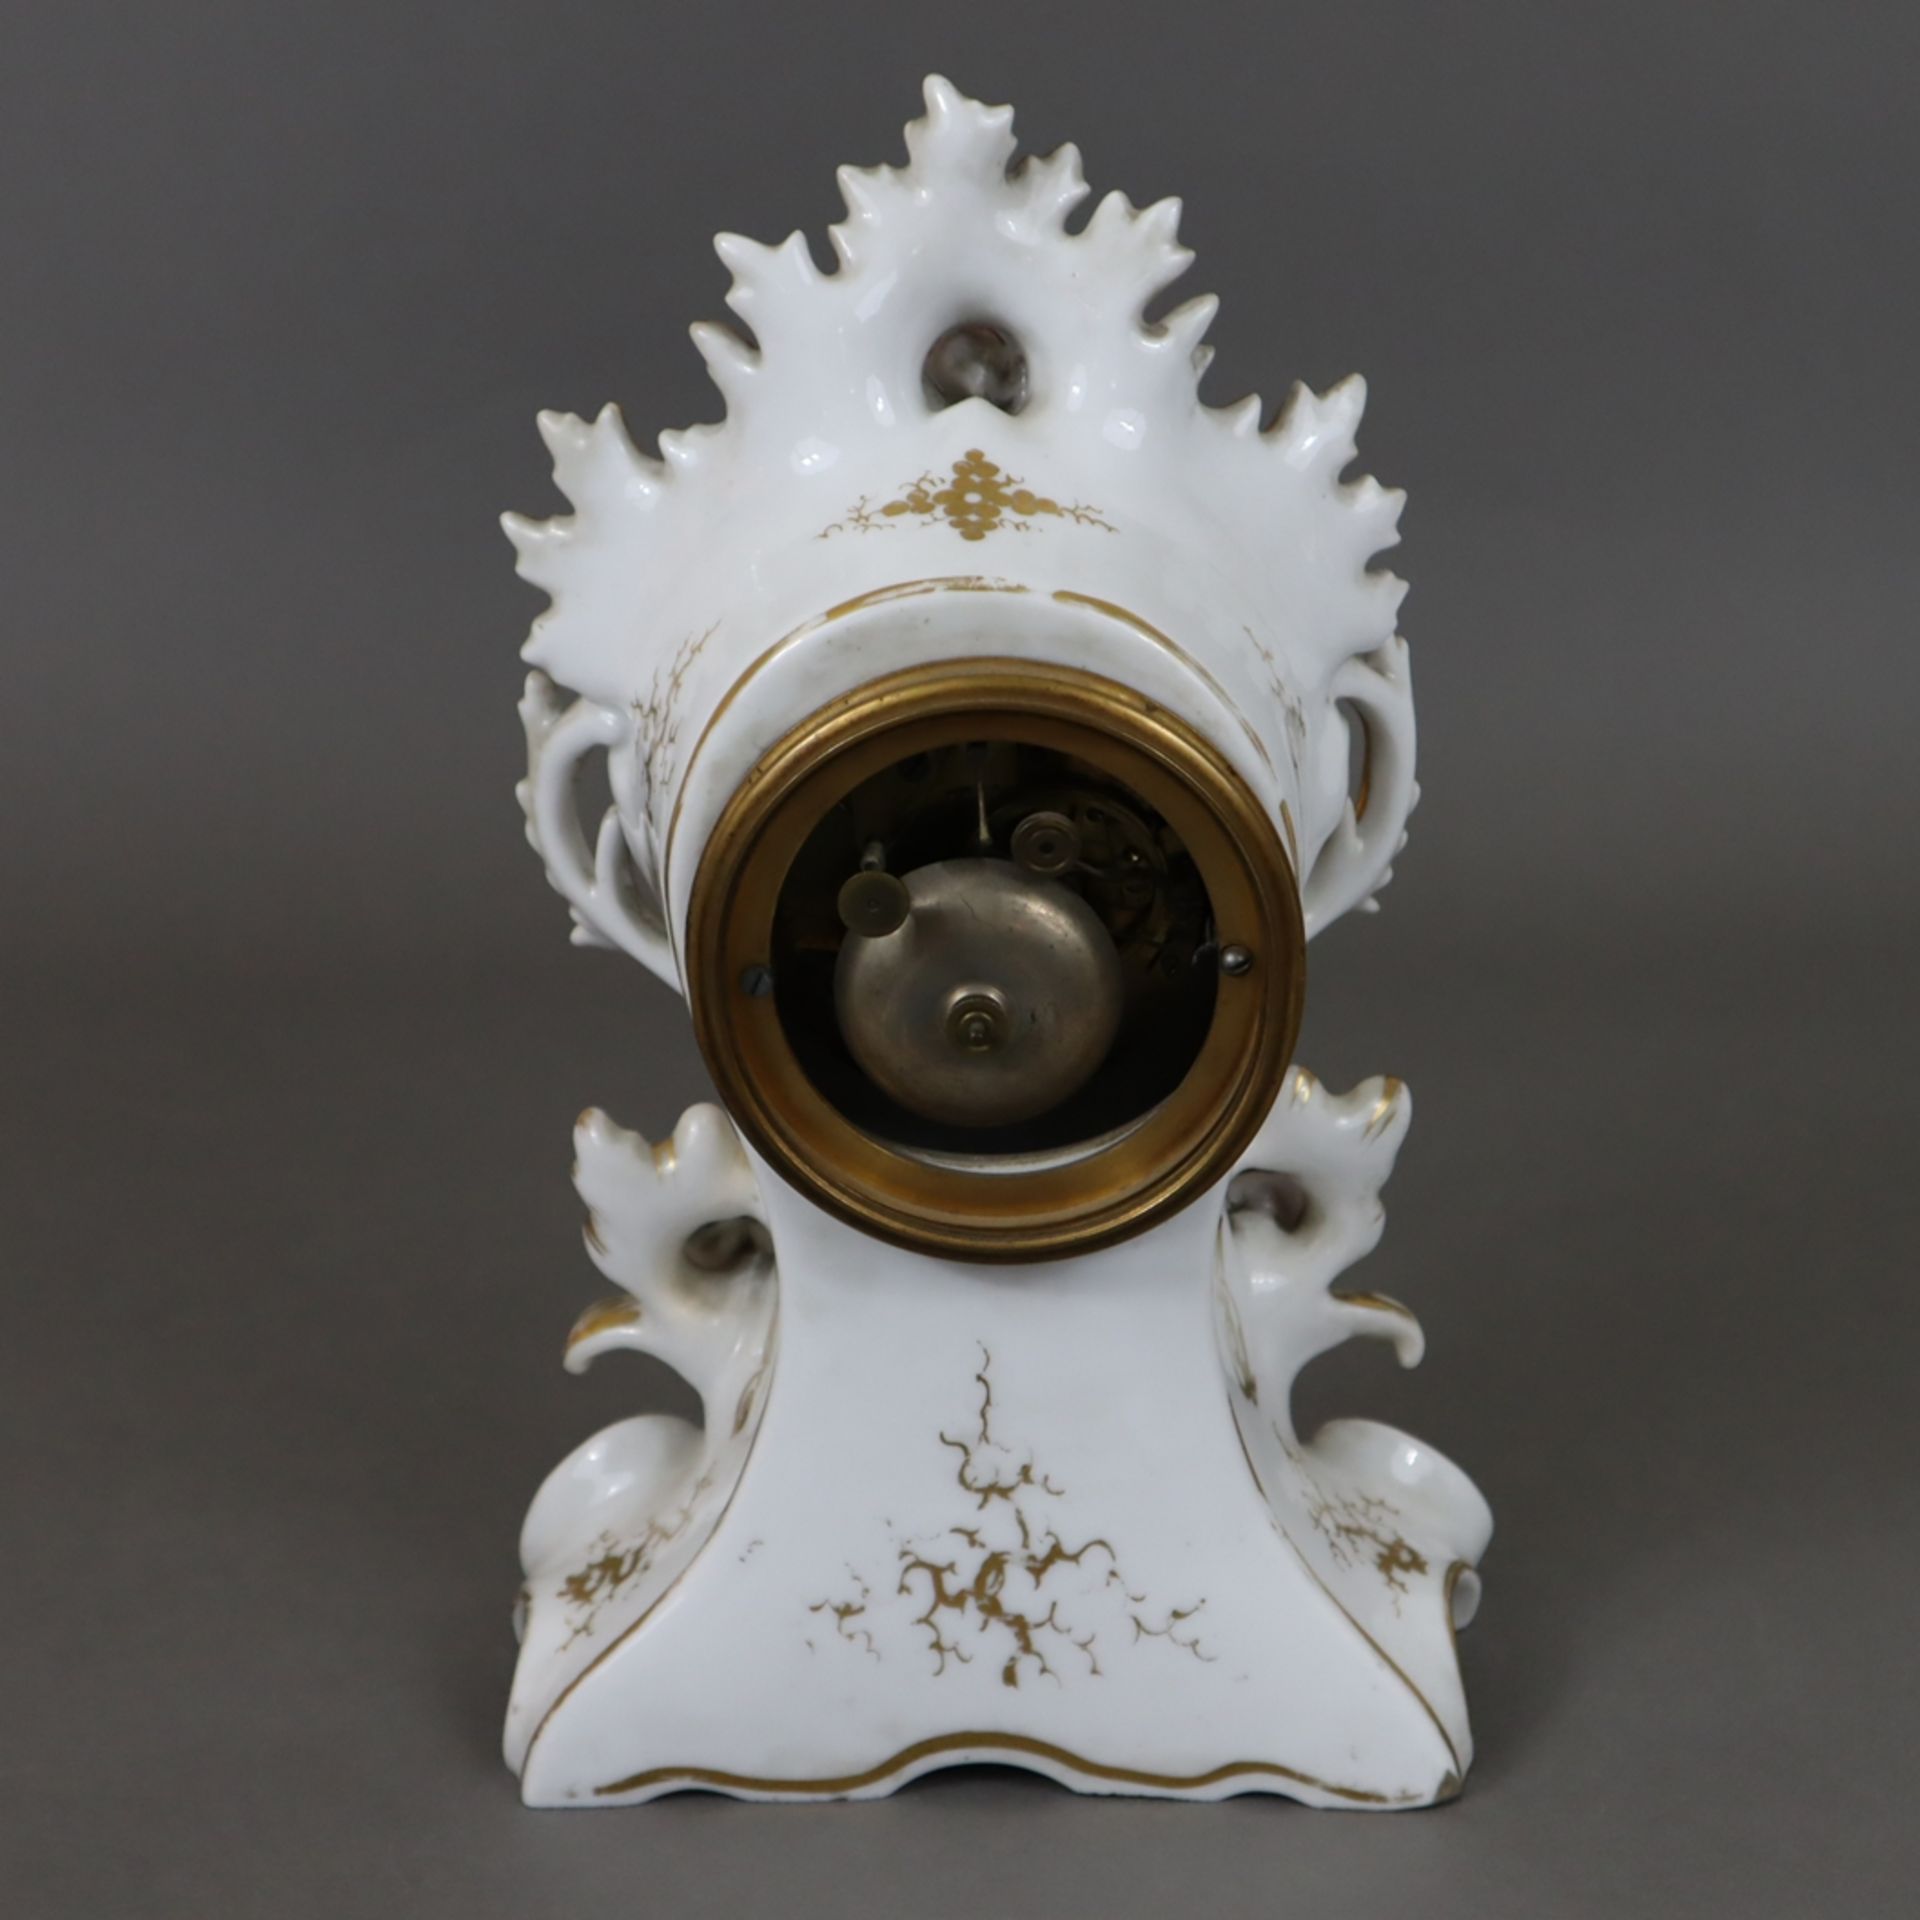 Porzellanuhr - teils durchbrochen gearbeitetes Rocaillegehäuse mit polychromer Blumenmalerei, Golds - Image 8 of 11